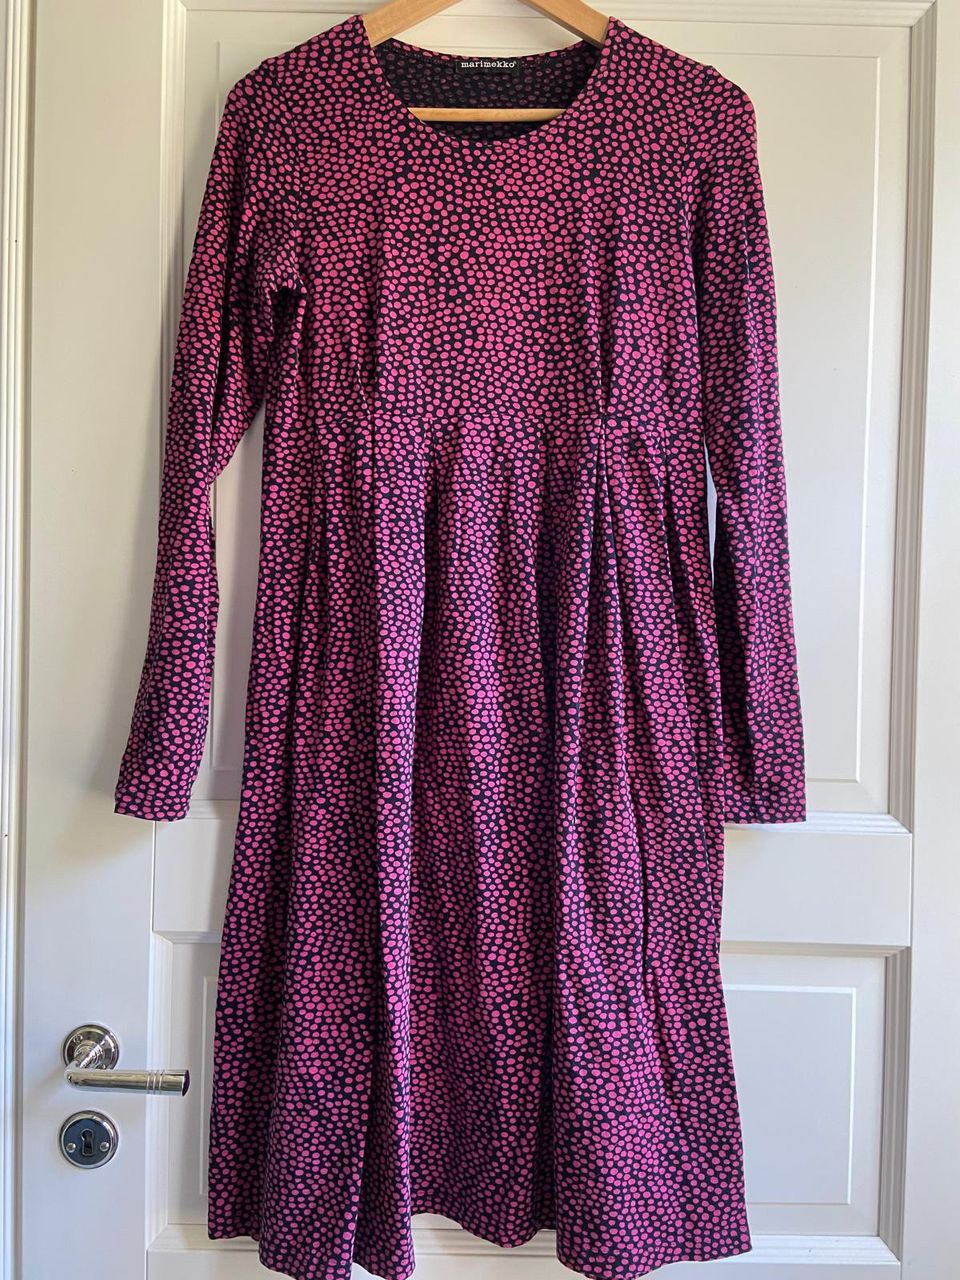 Marimekko, vintagea mekko,puuvillatrikoota